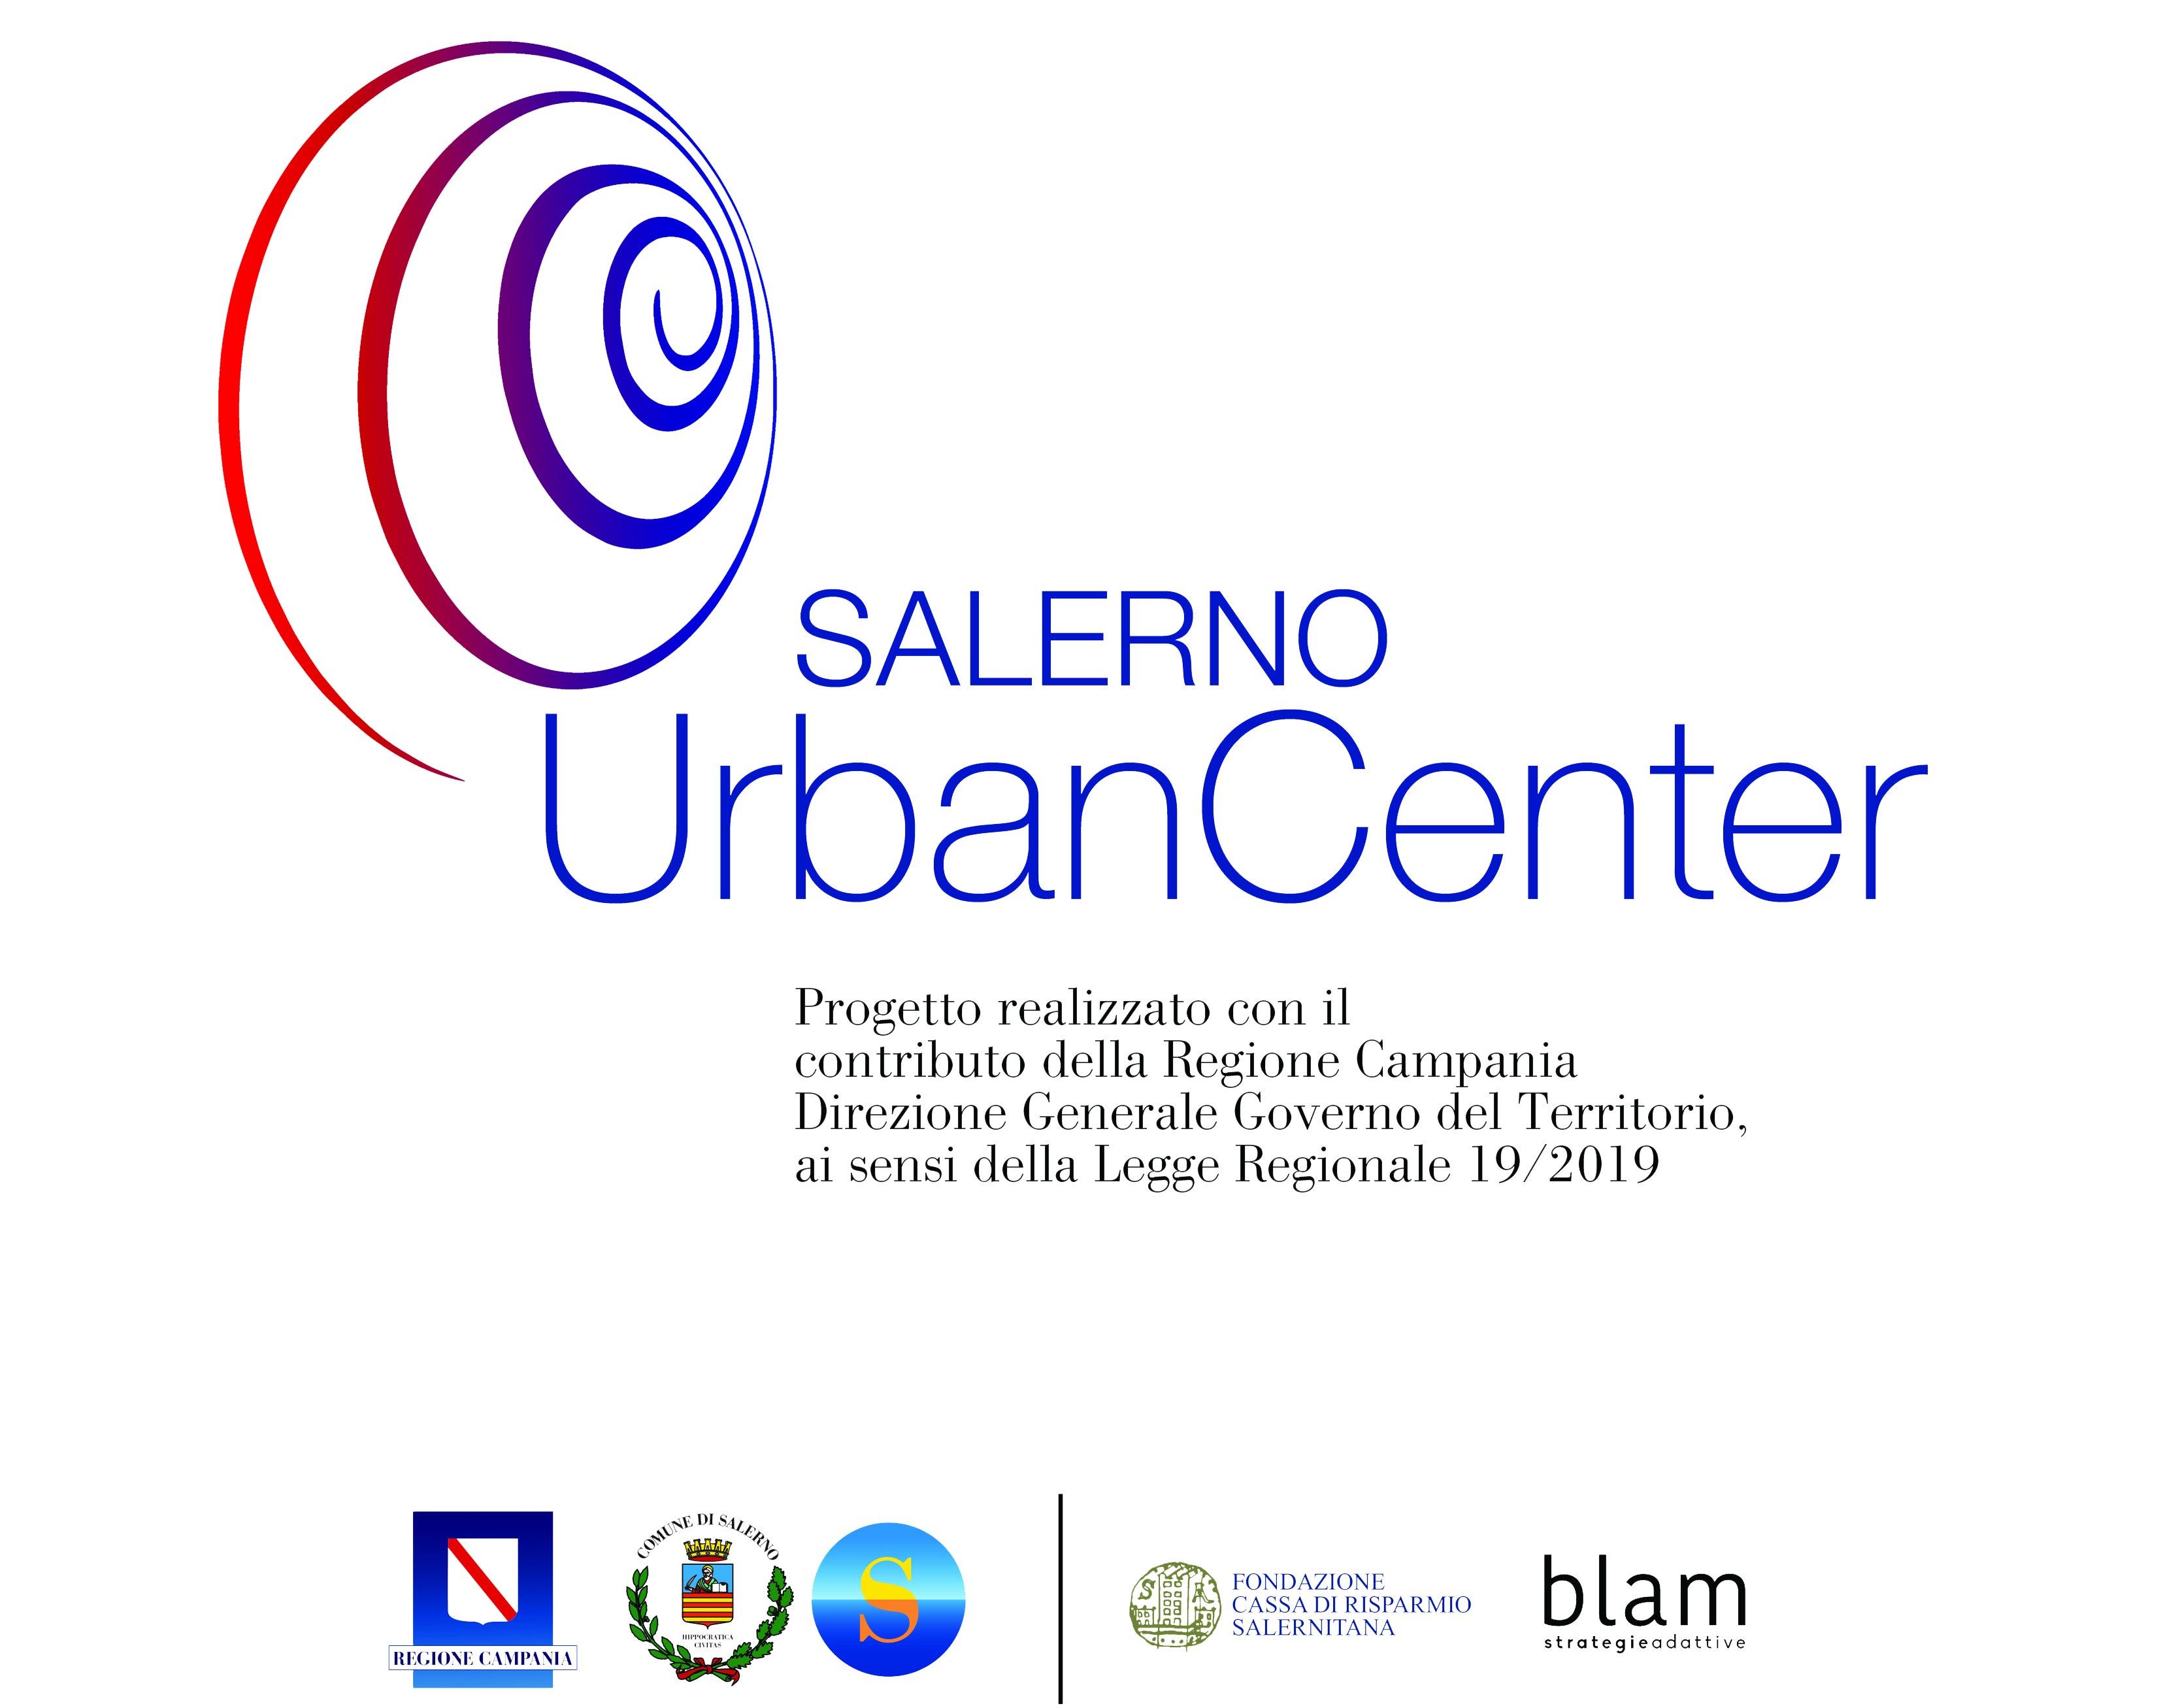 Loghi Urban Center Salerno